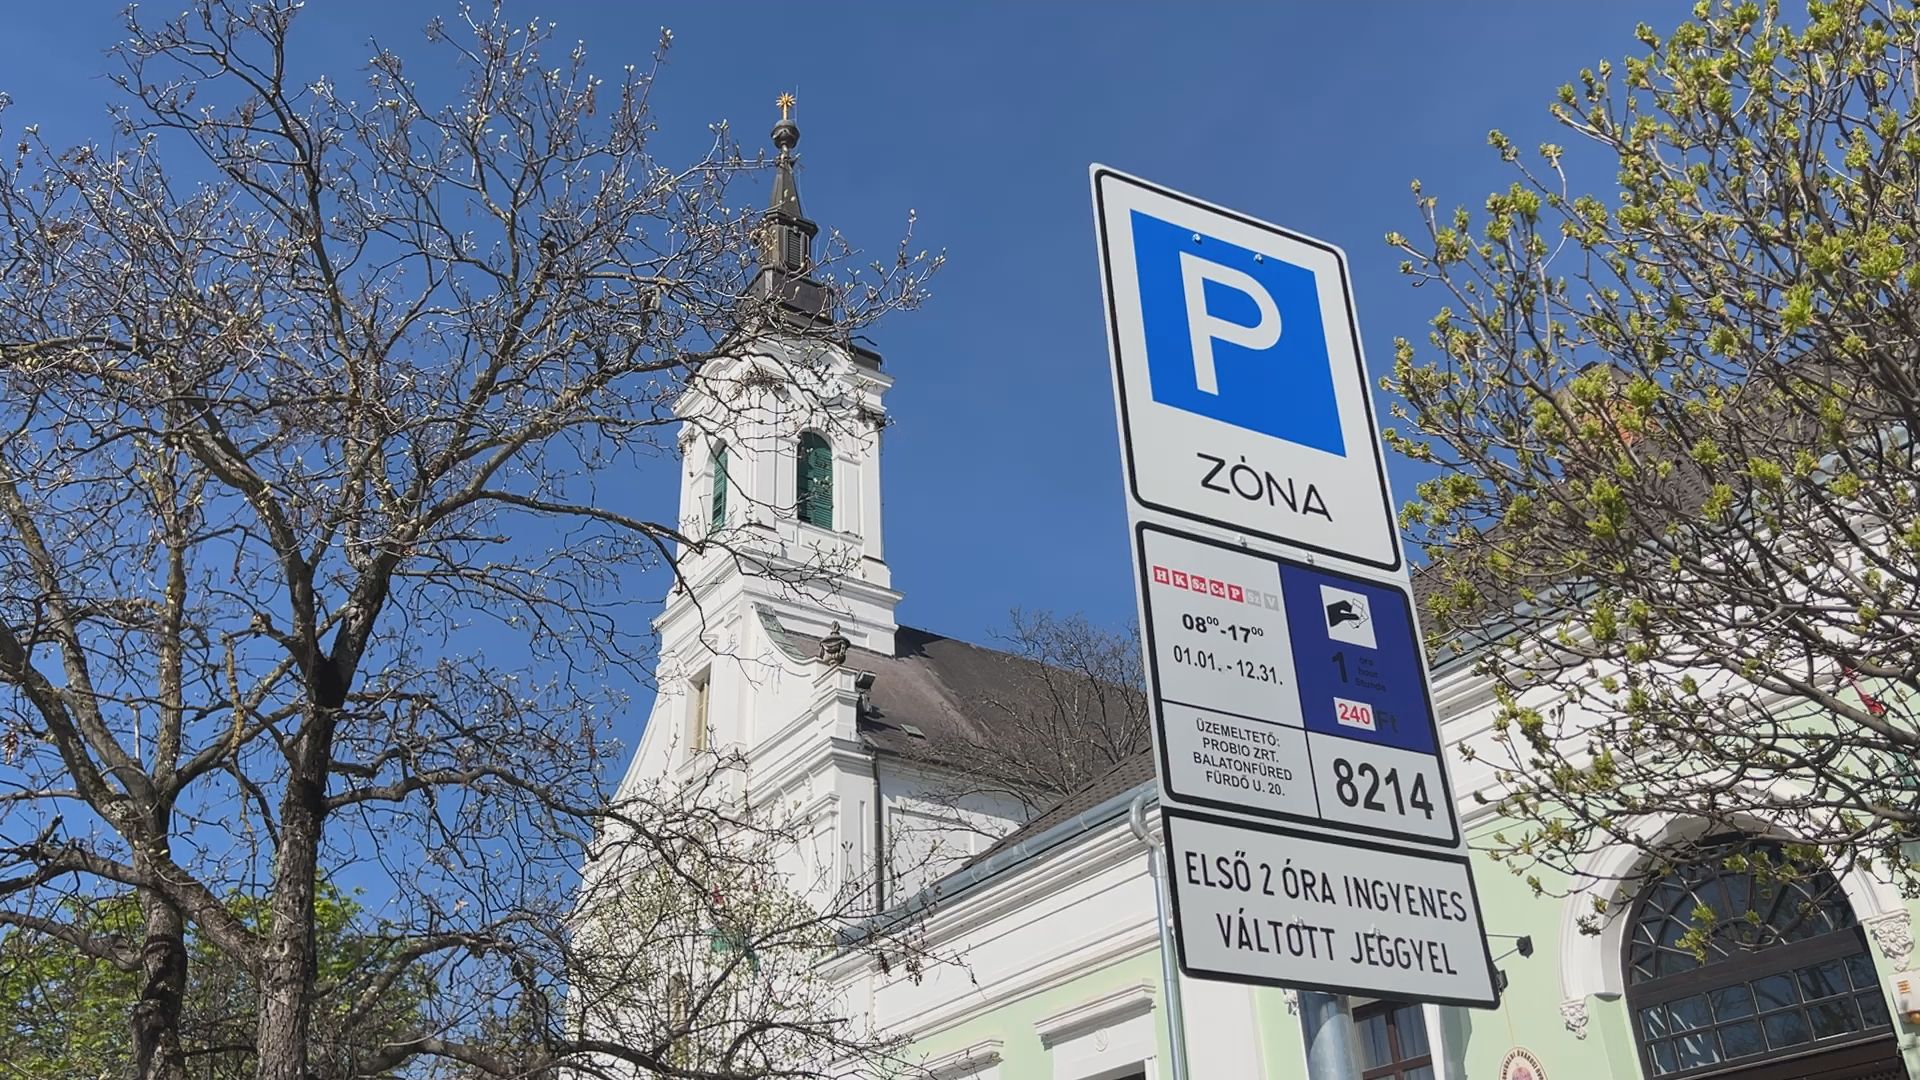 Elindult a fizetős parkolás Balatonfüred óvárosi részén